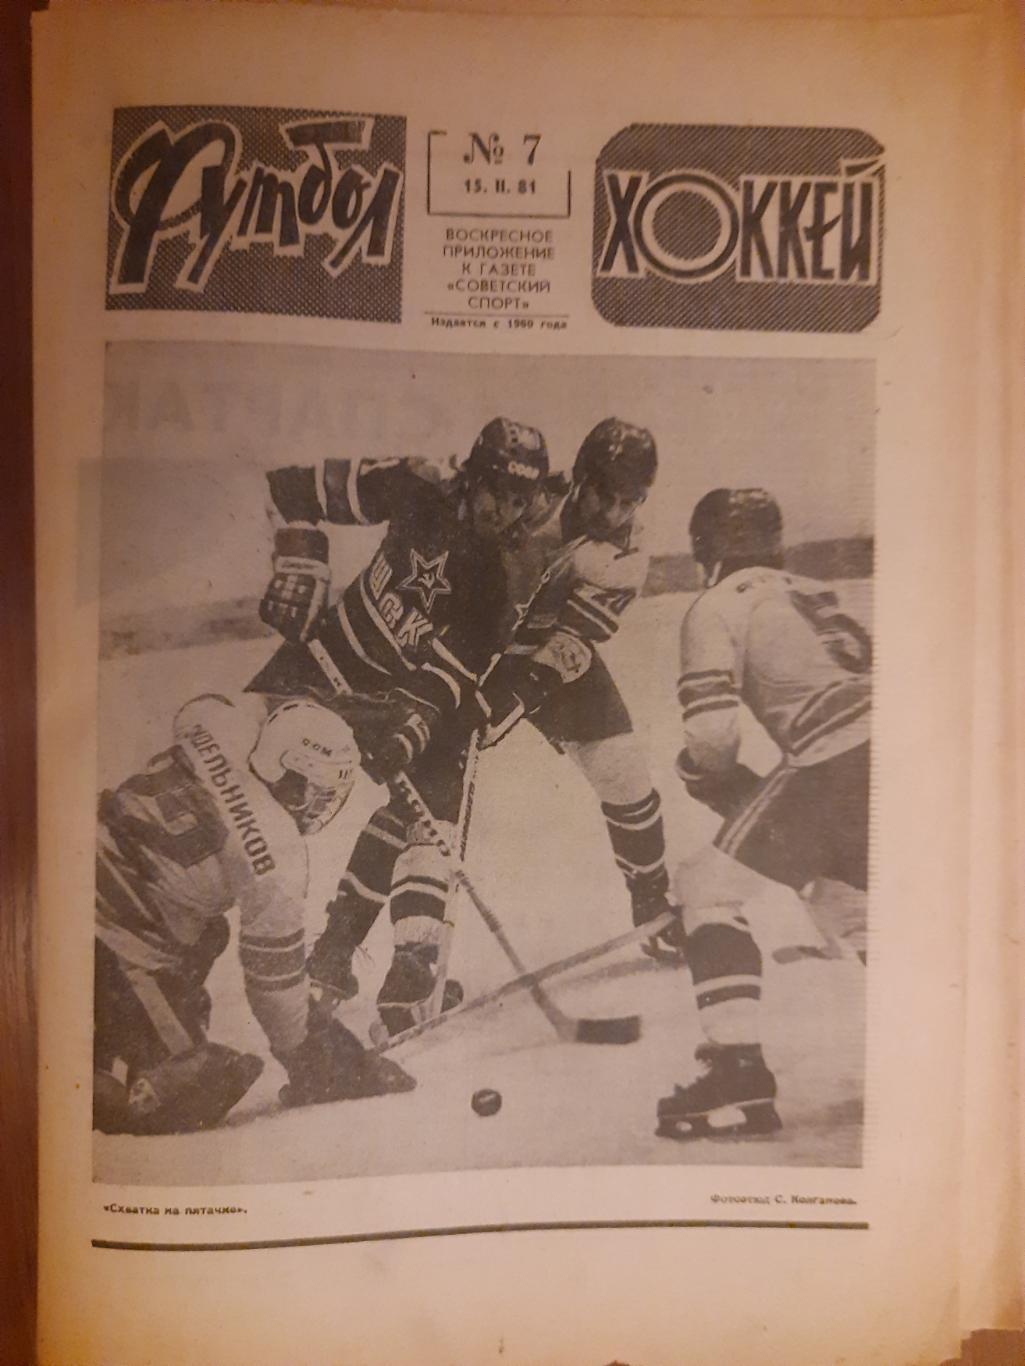 еженедельник футбол-хоккей #7 ,1981